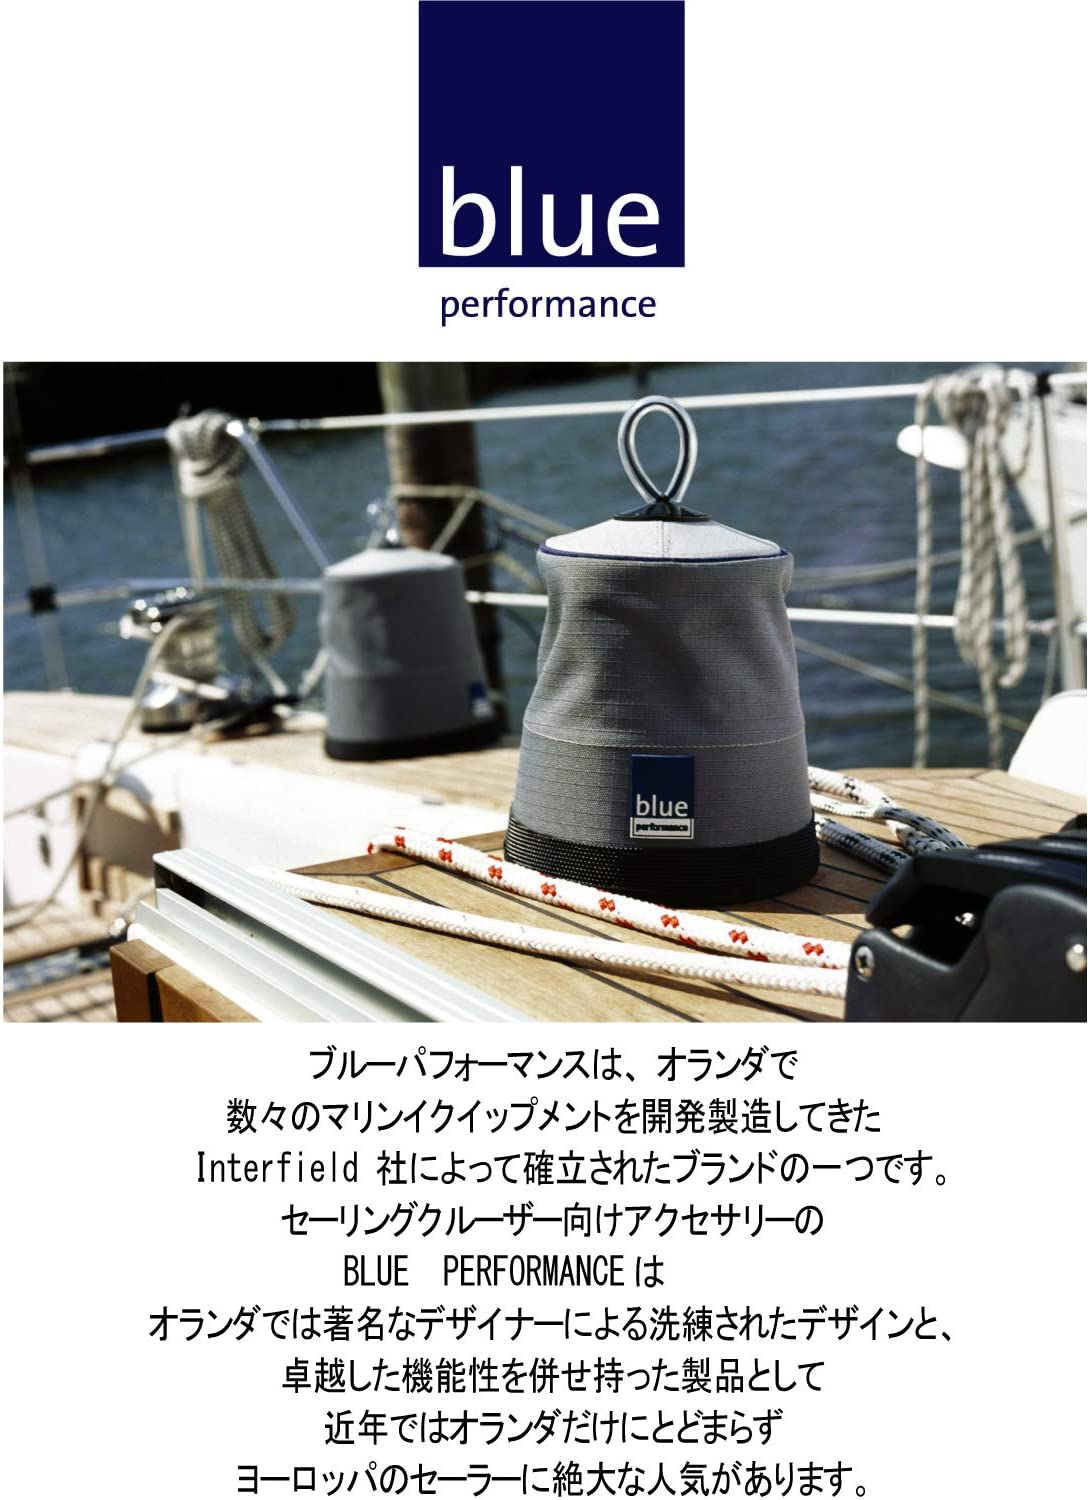 ブルーパフォーマンス (bule performance) ウインチカバー - 5,330円